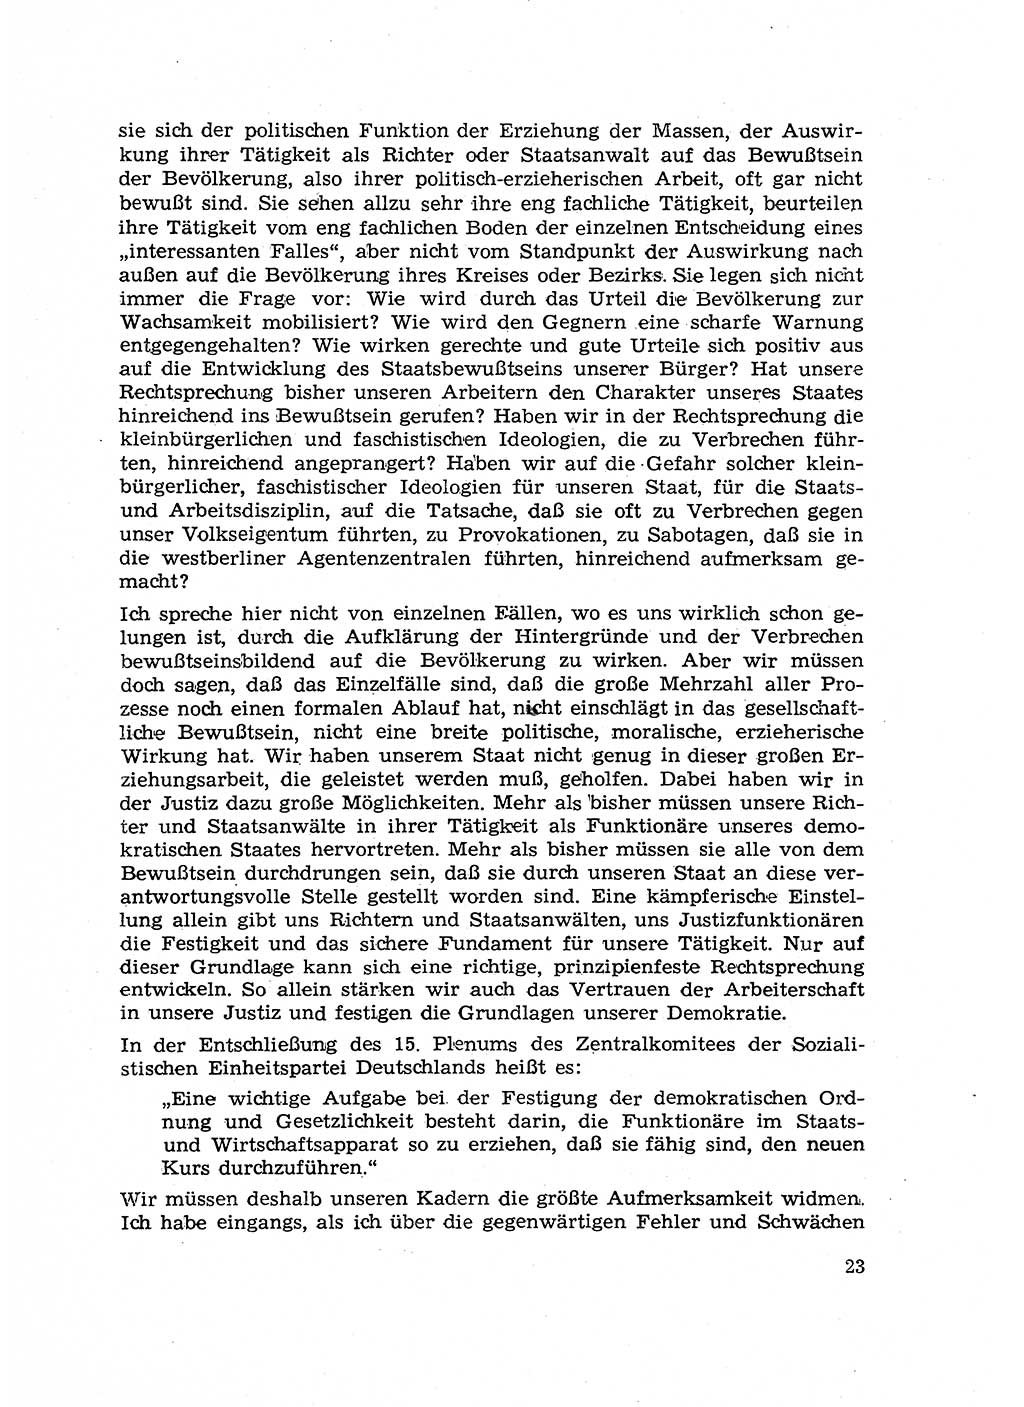 Hauptaufgaben der Justiz [Deutsche Demokratische Republik (DDR)] bei der Durchführung des neuen Kurses 1953, Seite 23 (Hpt.-Aufg. J. DDR 1953, S. 23)